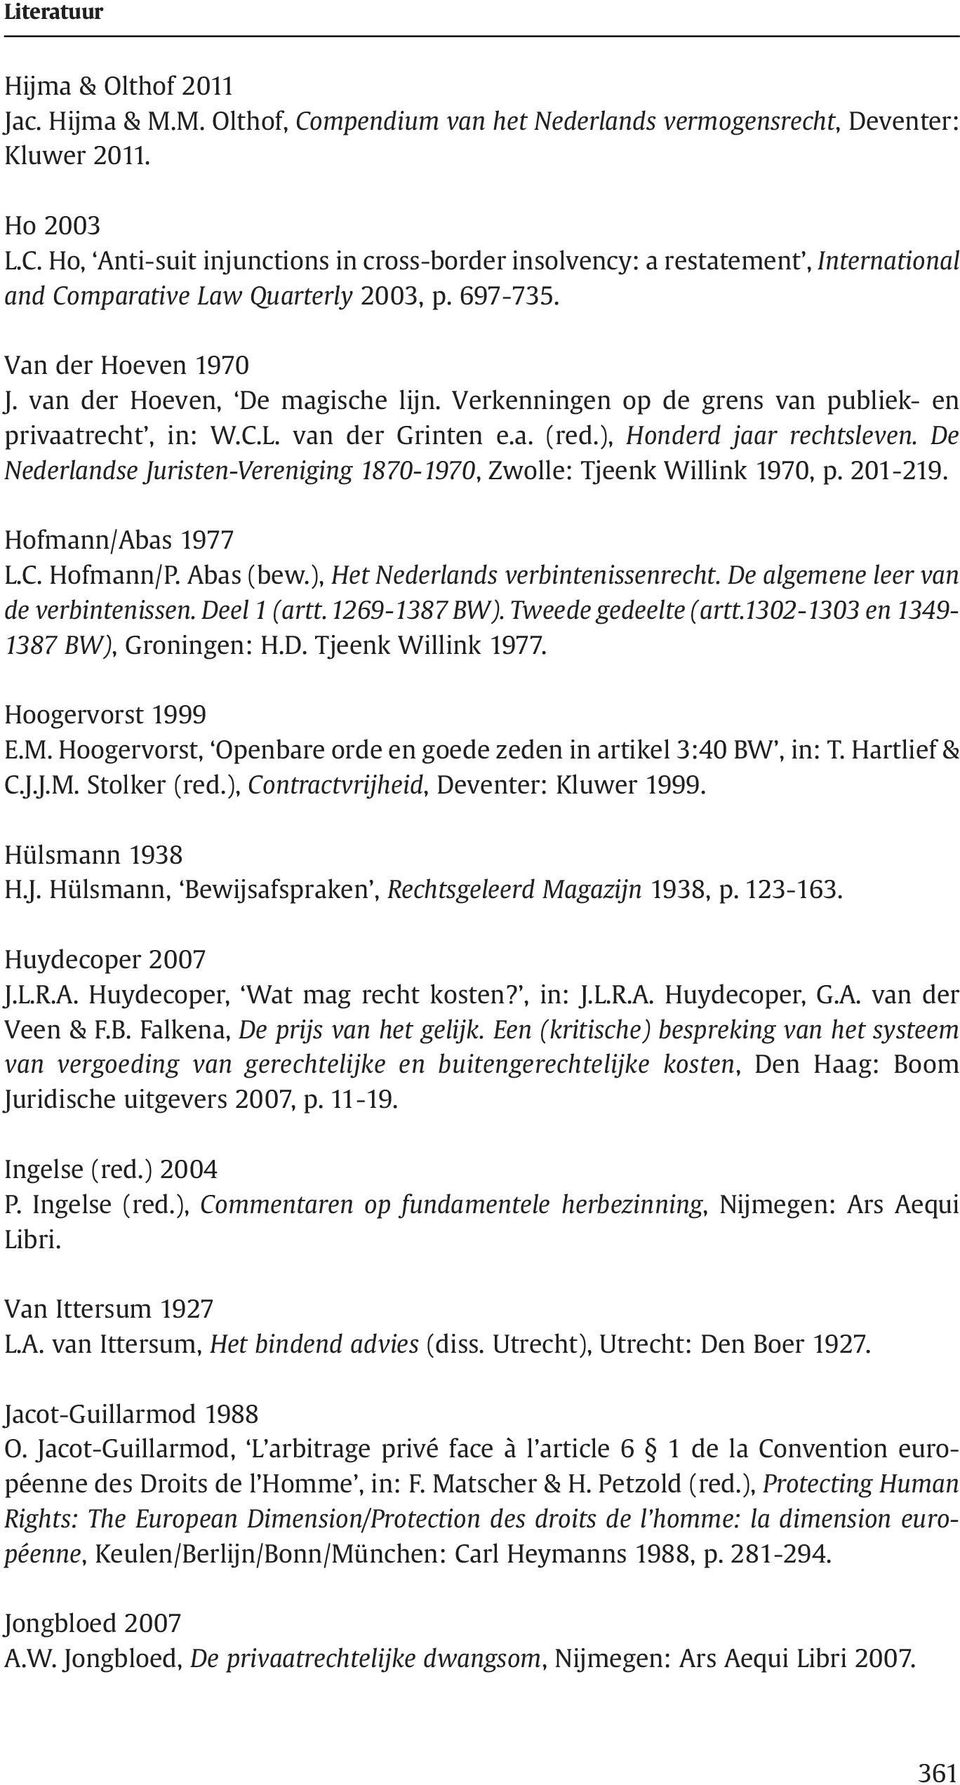 De Nederlandse Juristen-Vereniging 1870-1970, Zwolle: Tjeenk Willink 1970, p. 201-219. Hofmann/Abas 1977 L.C. Hofmann/P. Abas (bew.), Het Nederlands verbintenissenrecht.